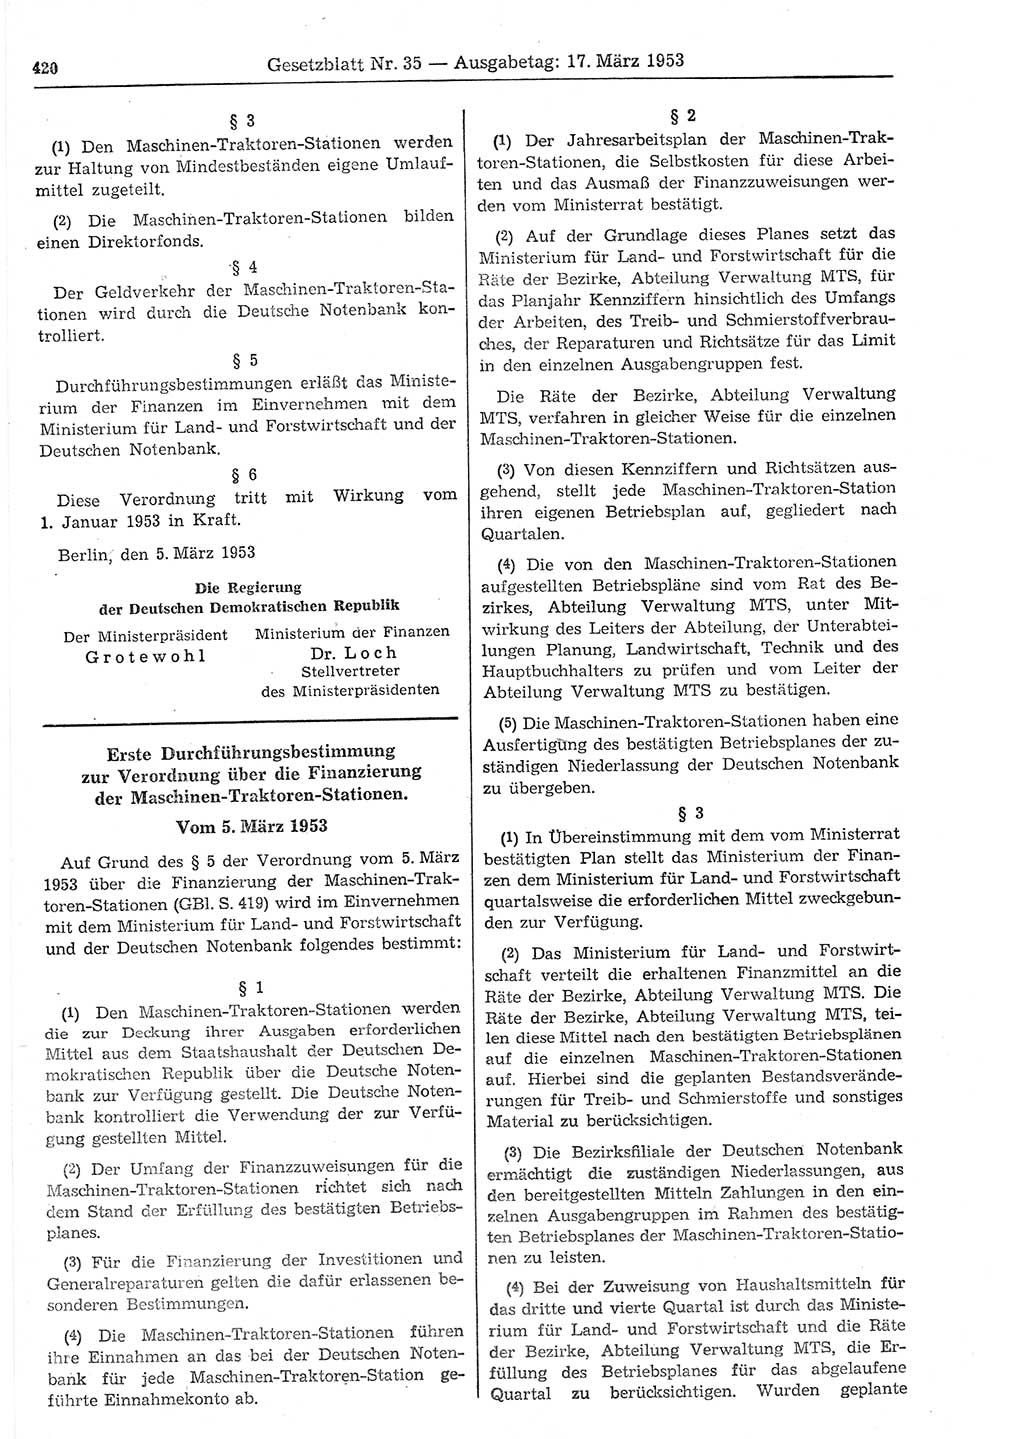 Gesetzblatt (GBl.) der Deutschen Demokratischen Republik (DDR) 1953, Seite 420 (GBl. DDR 1953, S. 420)